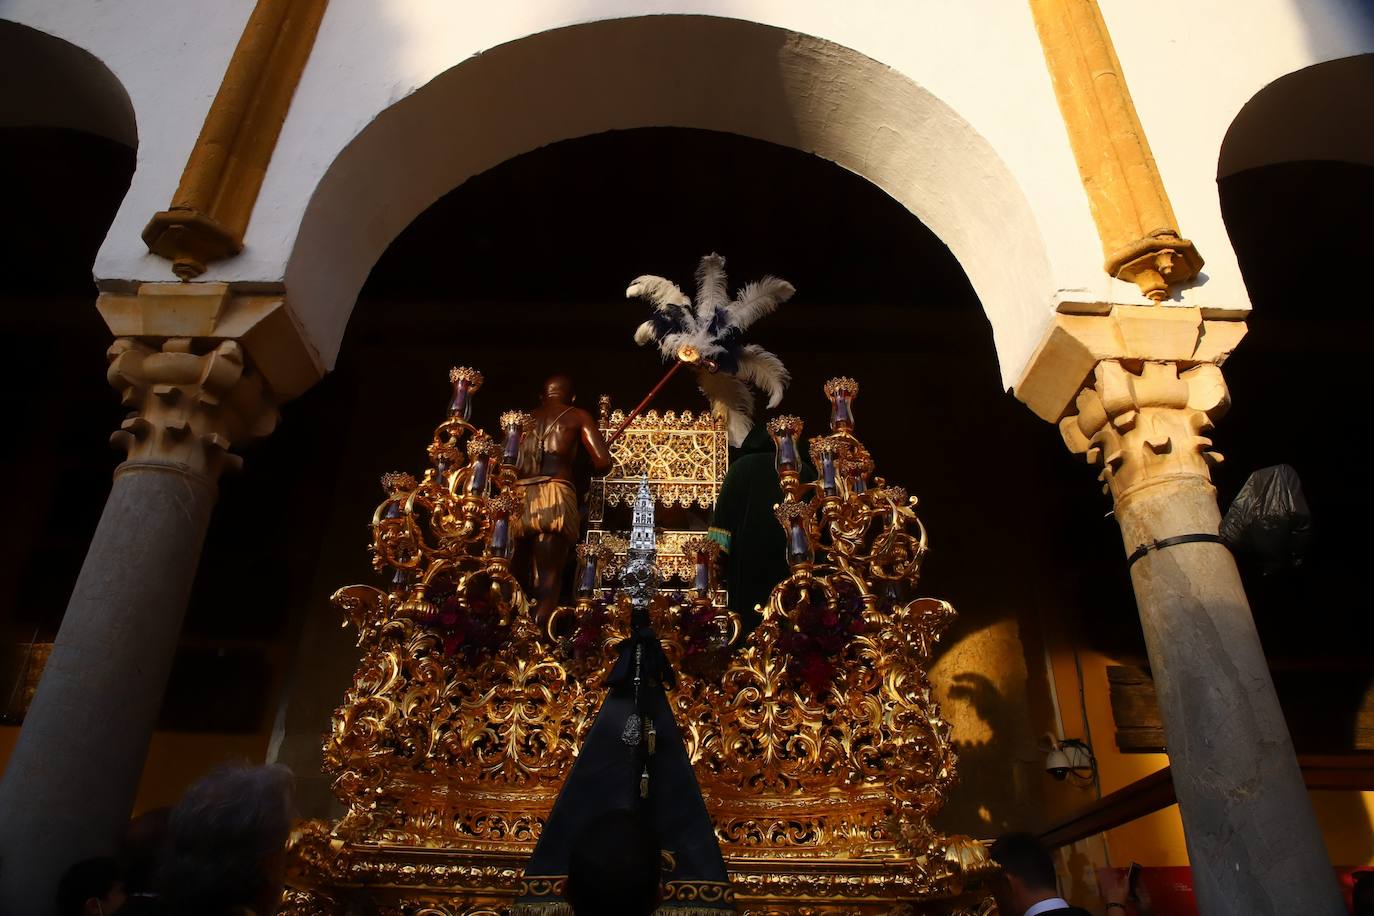 El regreso de la Estrella de Córdoba a San Fernando, en imágenes